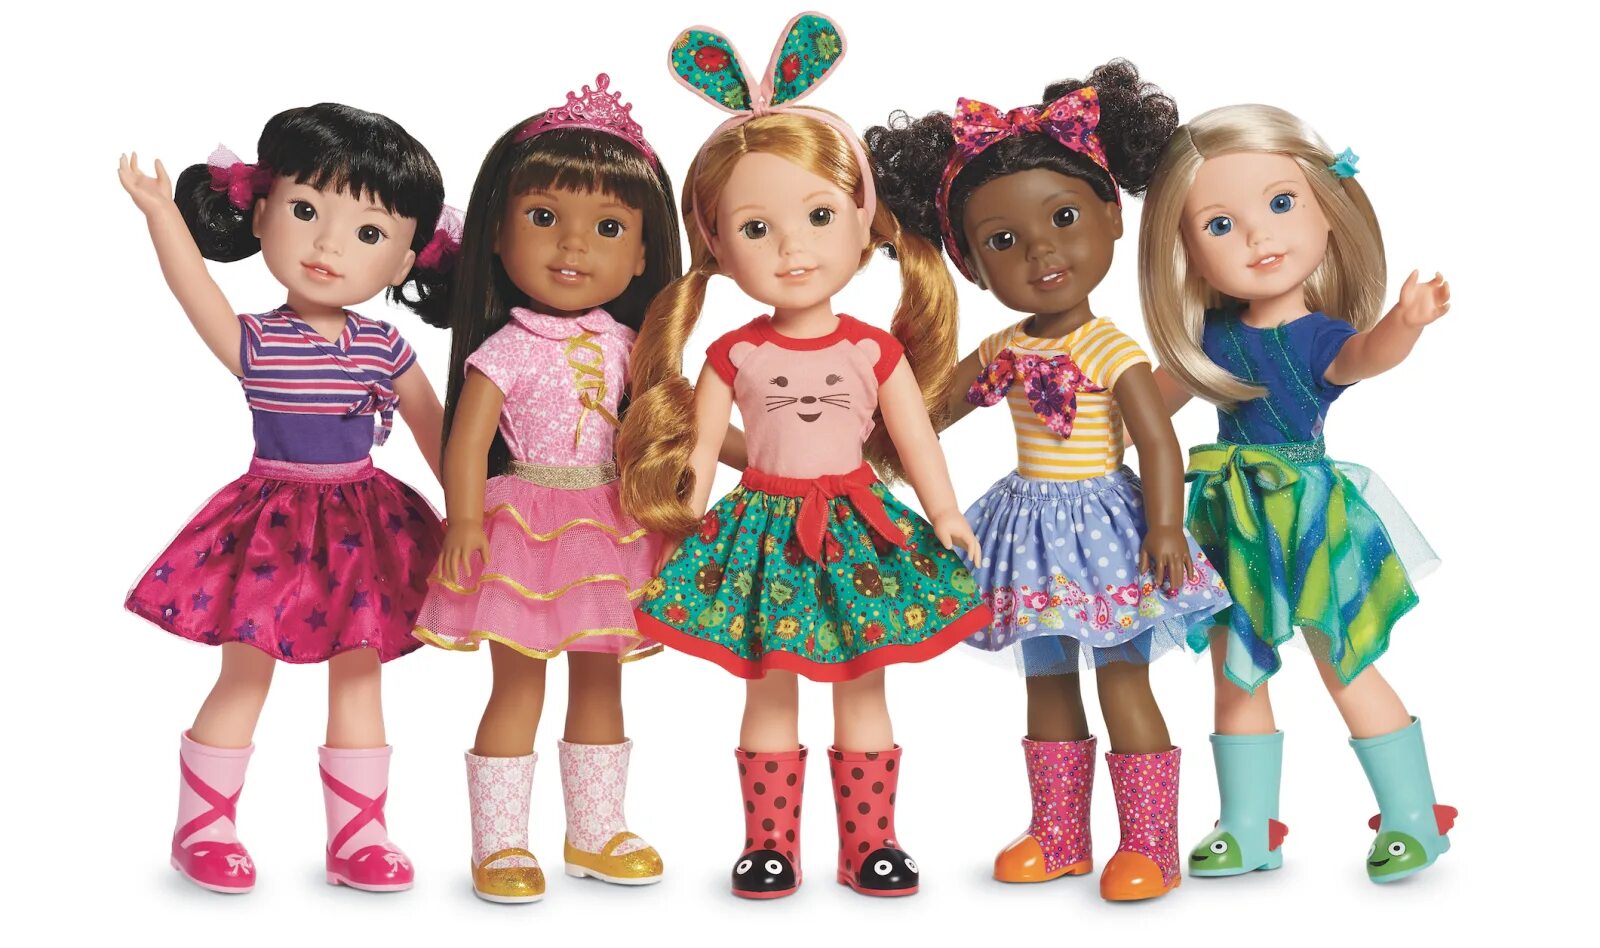 The dolls. Американ гёрл. Куклы для девочек. Современные куклы. Популярные куклы.